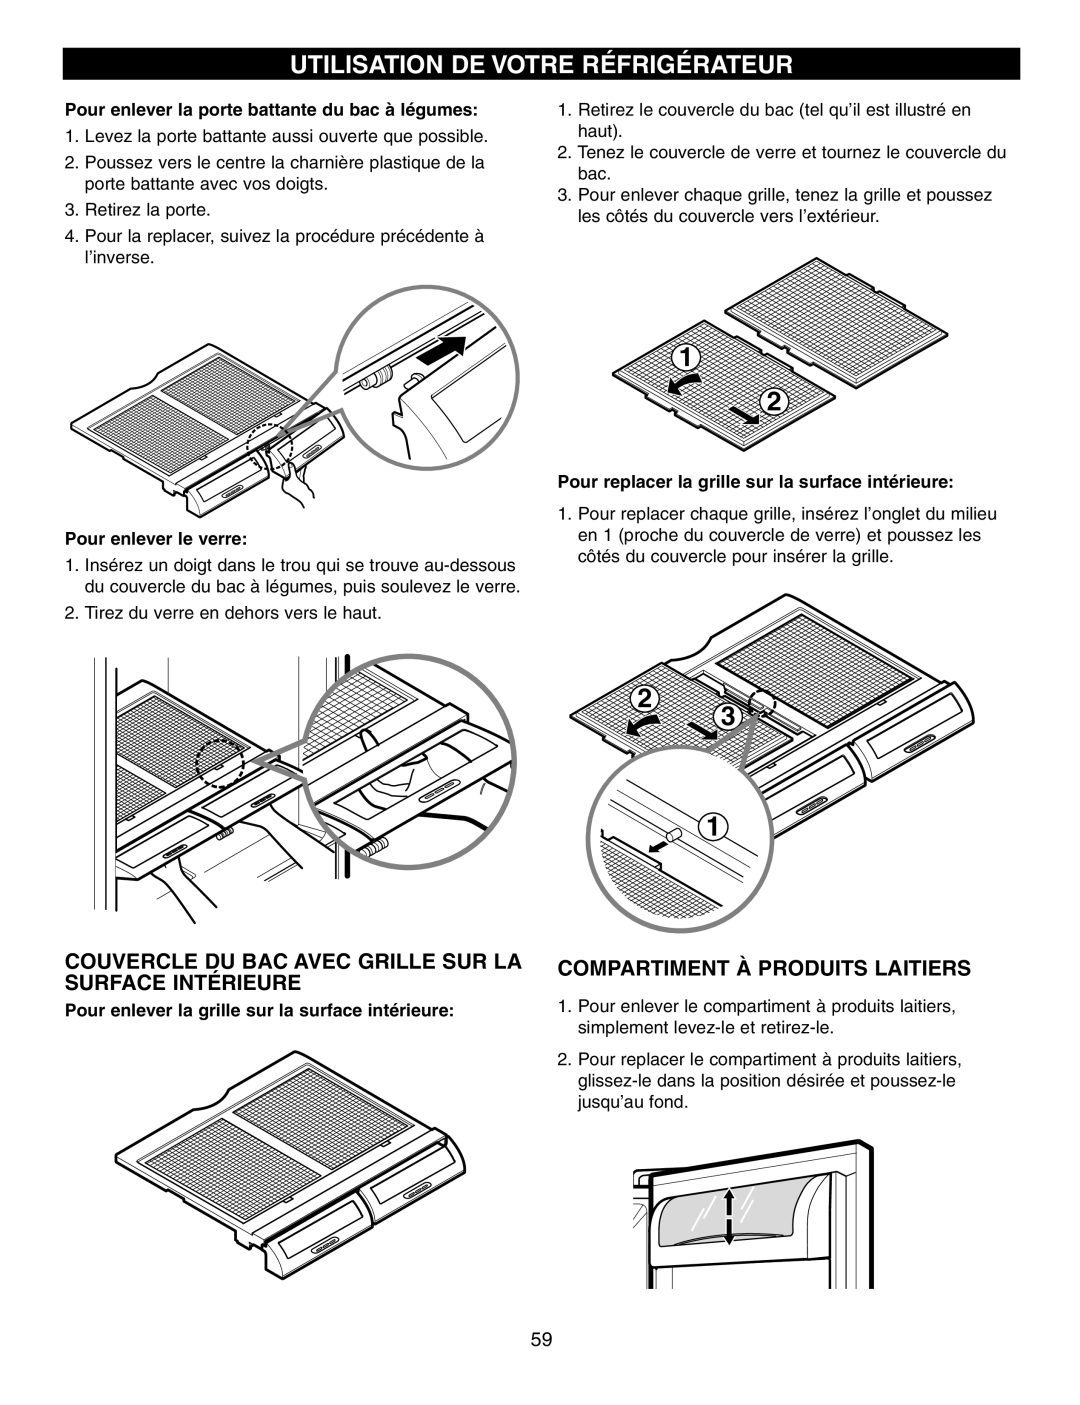 LG Electronics LFX21970 manual Utilisation De Votre Réfrigérateur, Couvercle Du Bac Avec Grille Sur La Surface Intérieure 